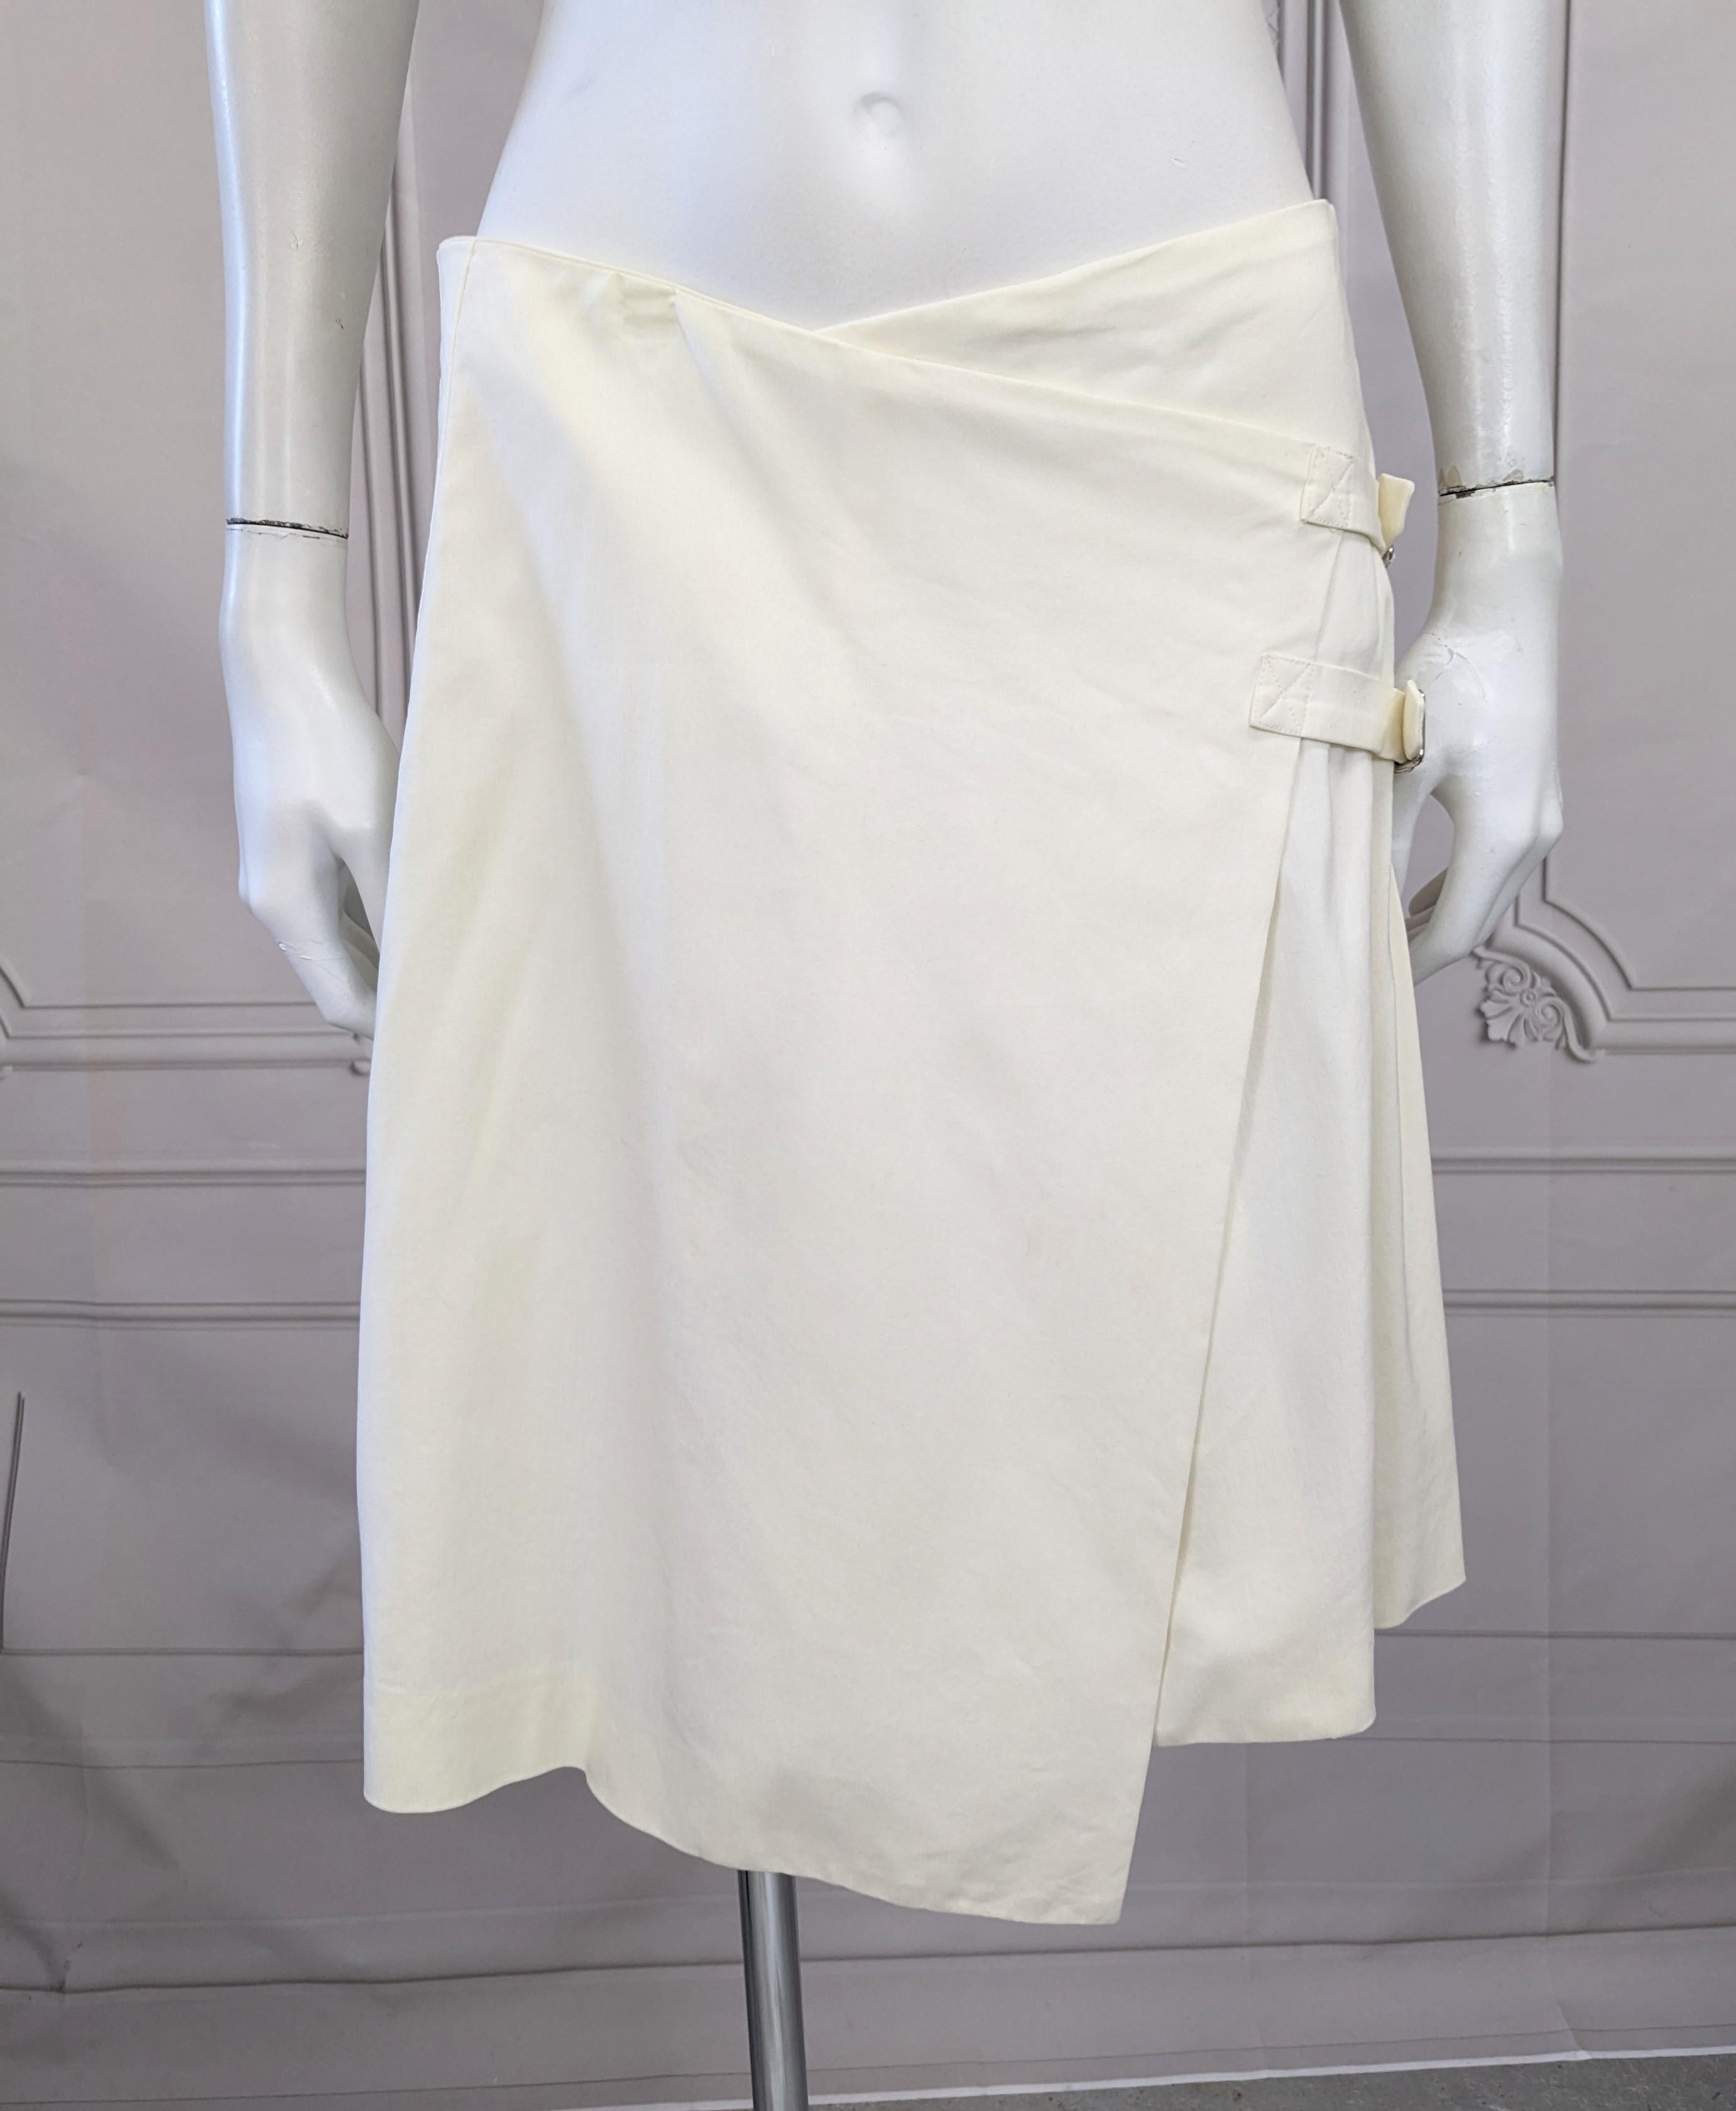 Intéressante jupe asymétrique déconstruite en twill de rayonne stretch blanc poli de John Galliano, printemps/été 2000. Le style enveloppant repose sur les hanches avec deux bretelles à boucle automatique qui se transforment en un kilt à plis en